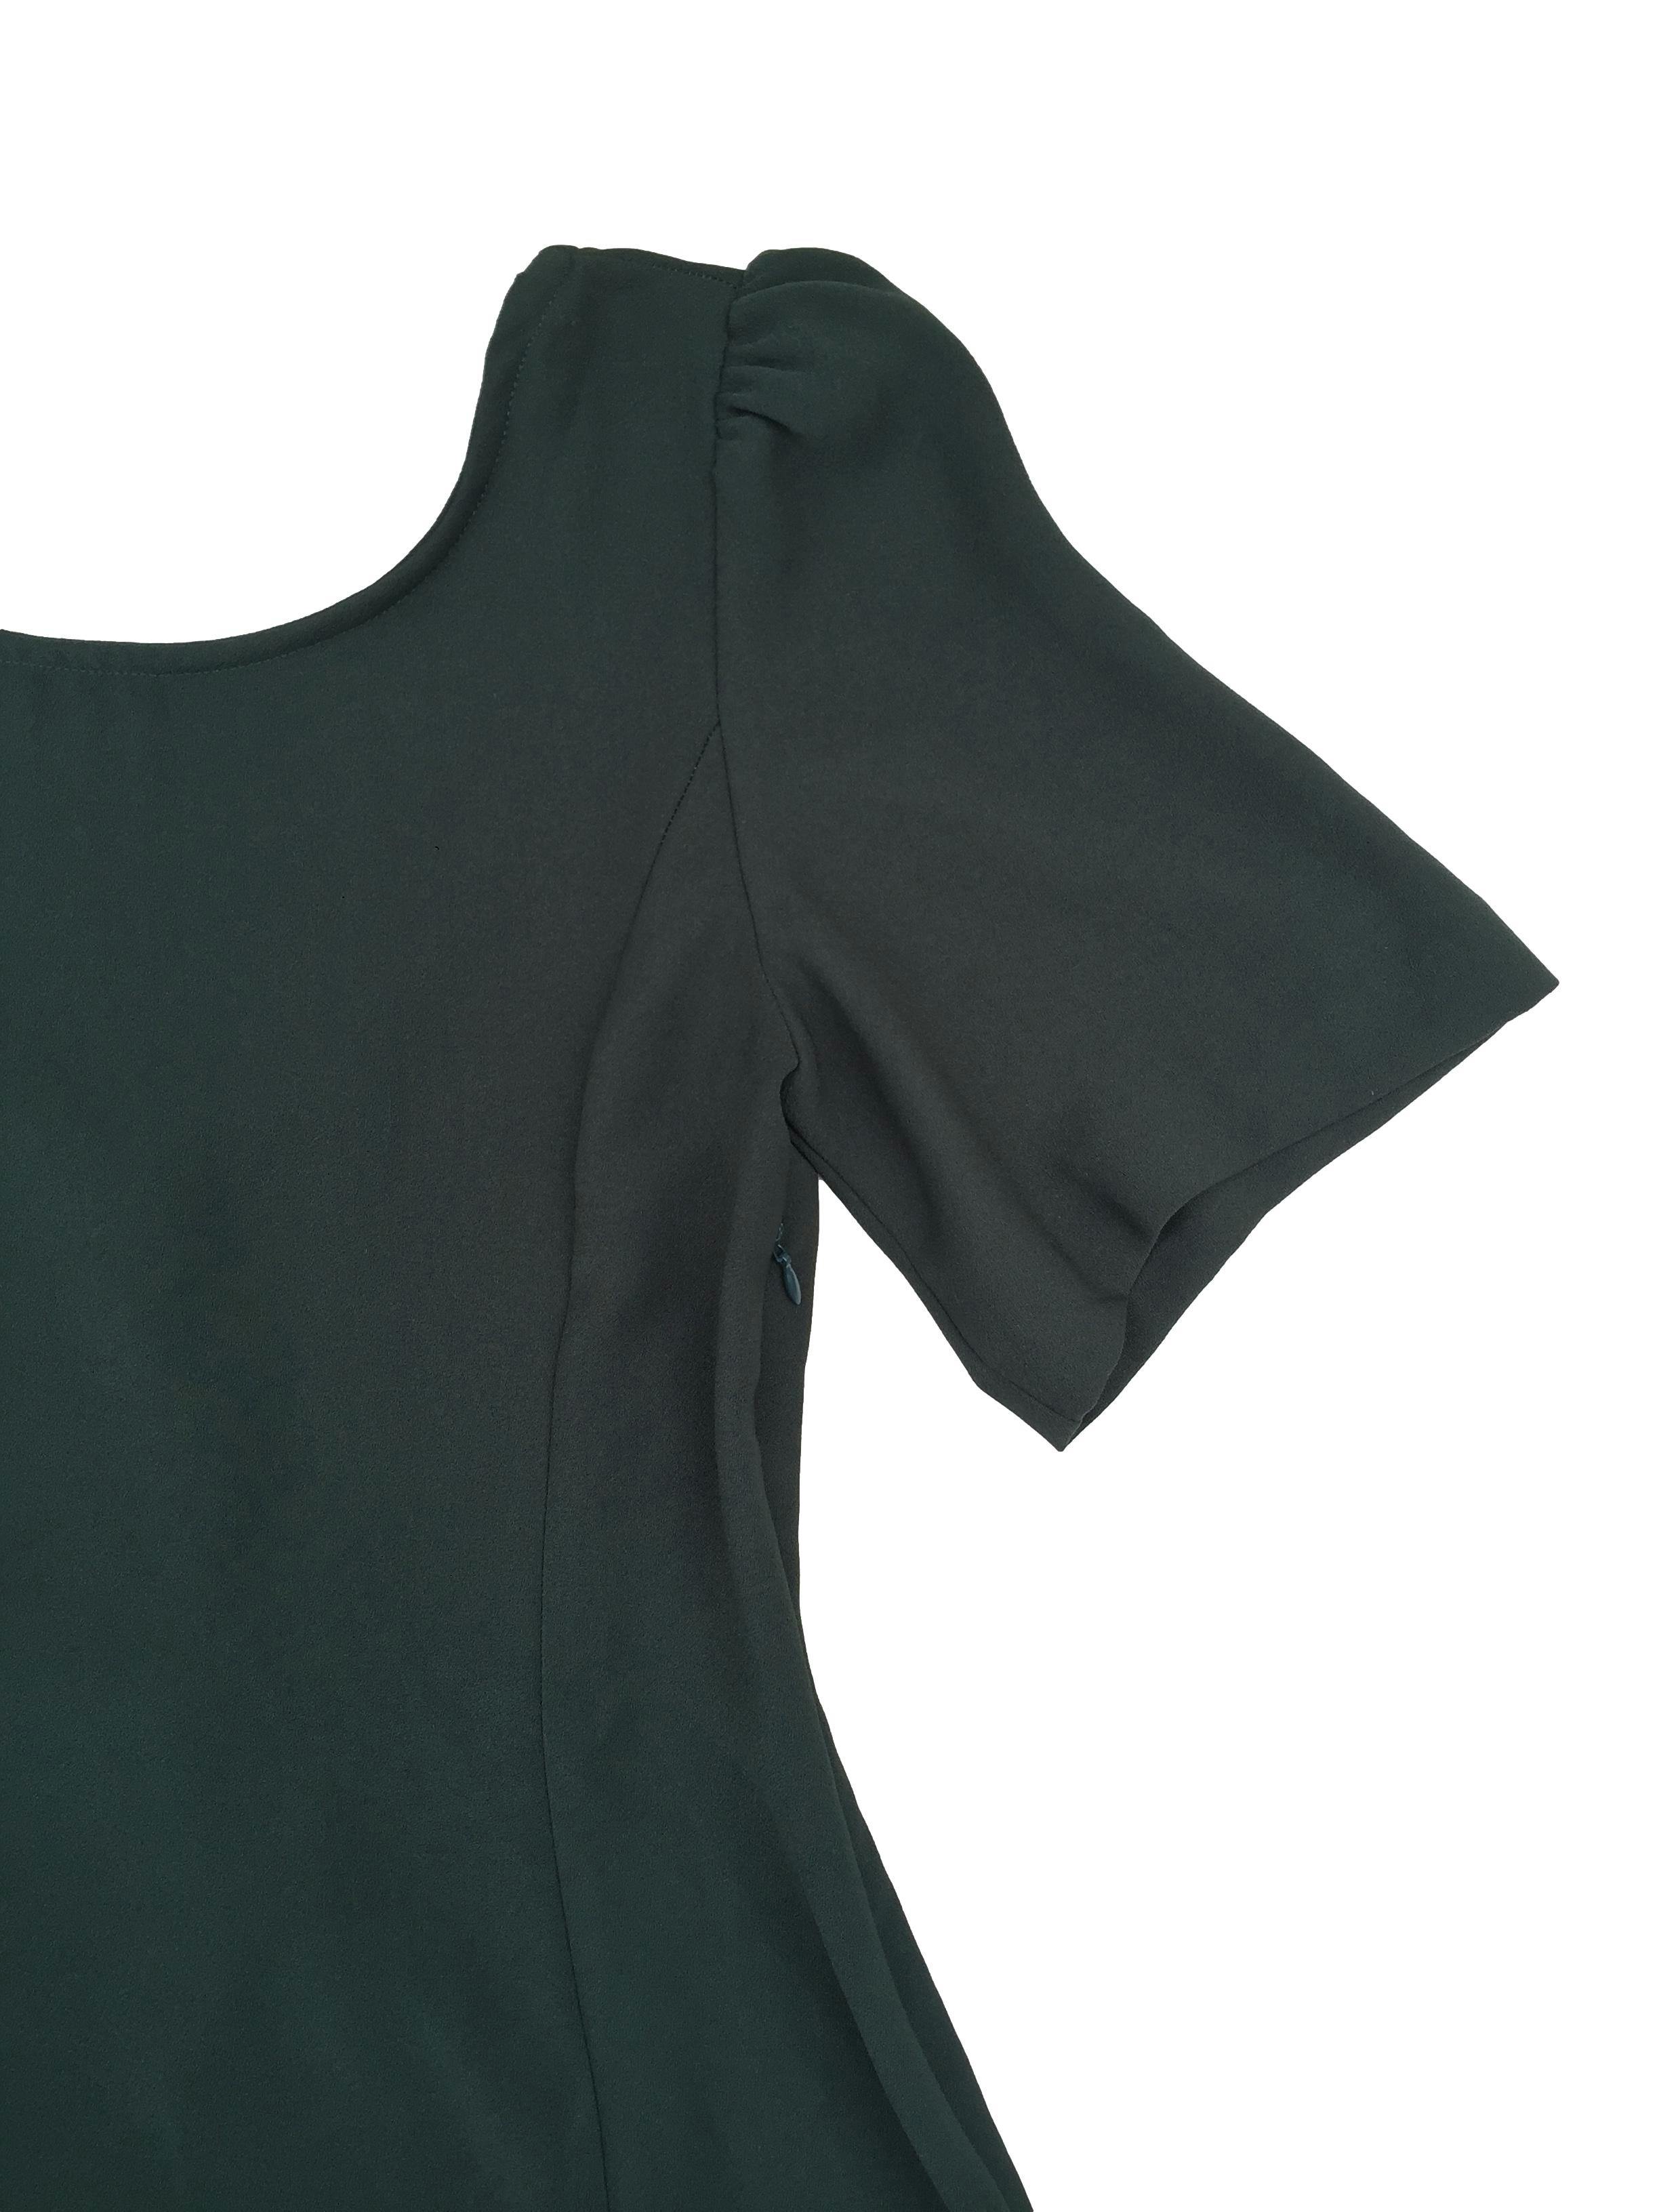 Vestido Mango tela plana gruesa verde falda en A y pasador regulable, cierre lateral. Busto 88cm Largo 85cm